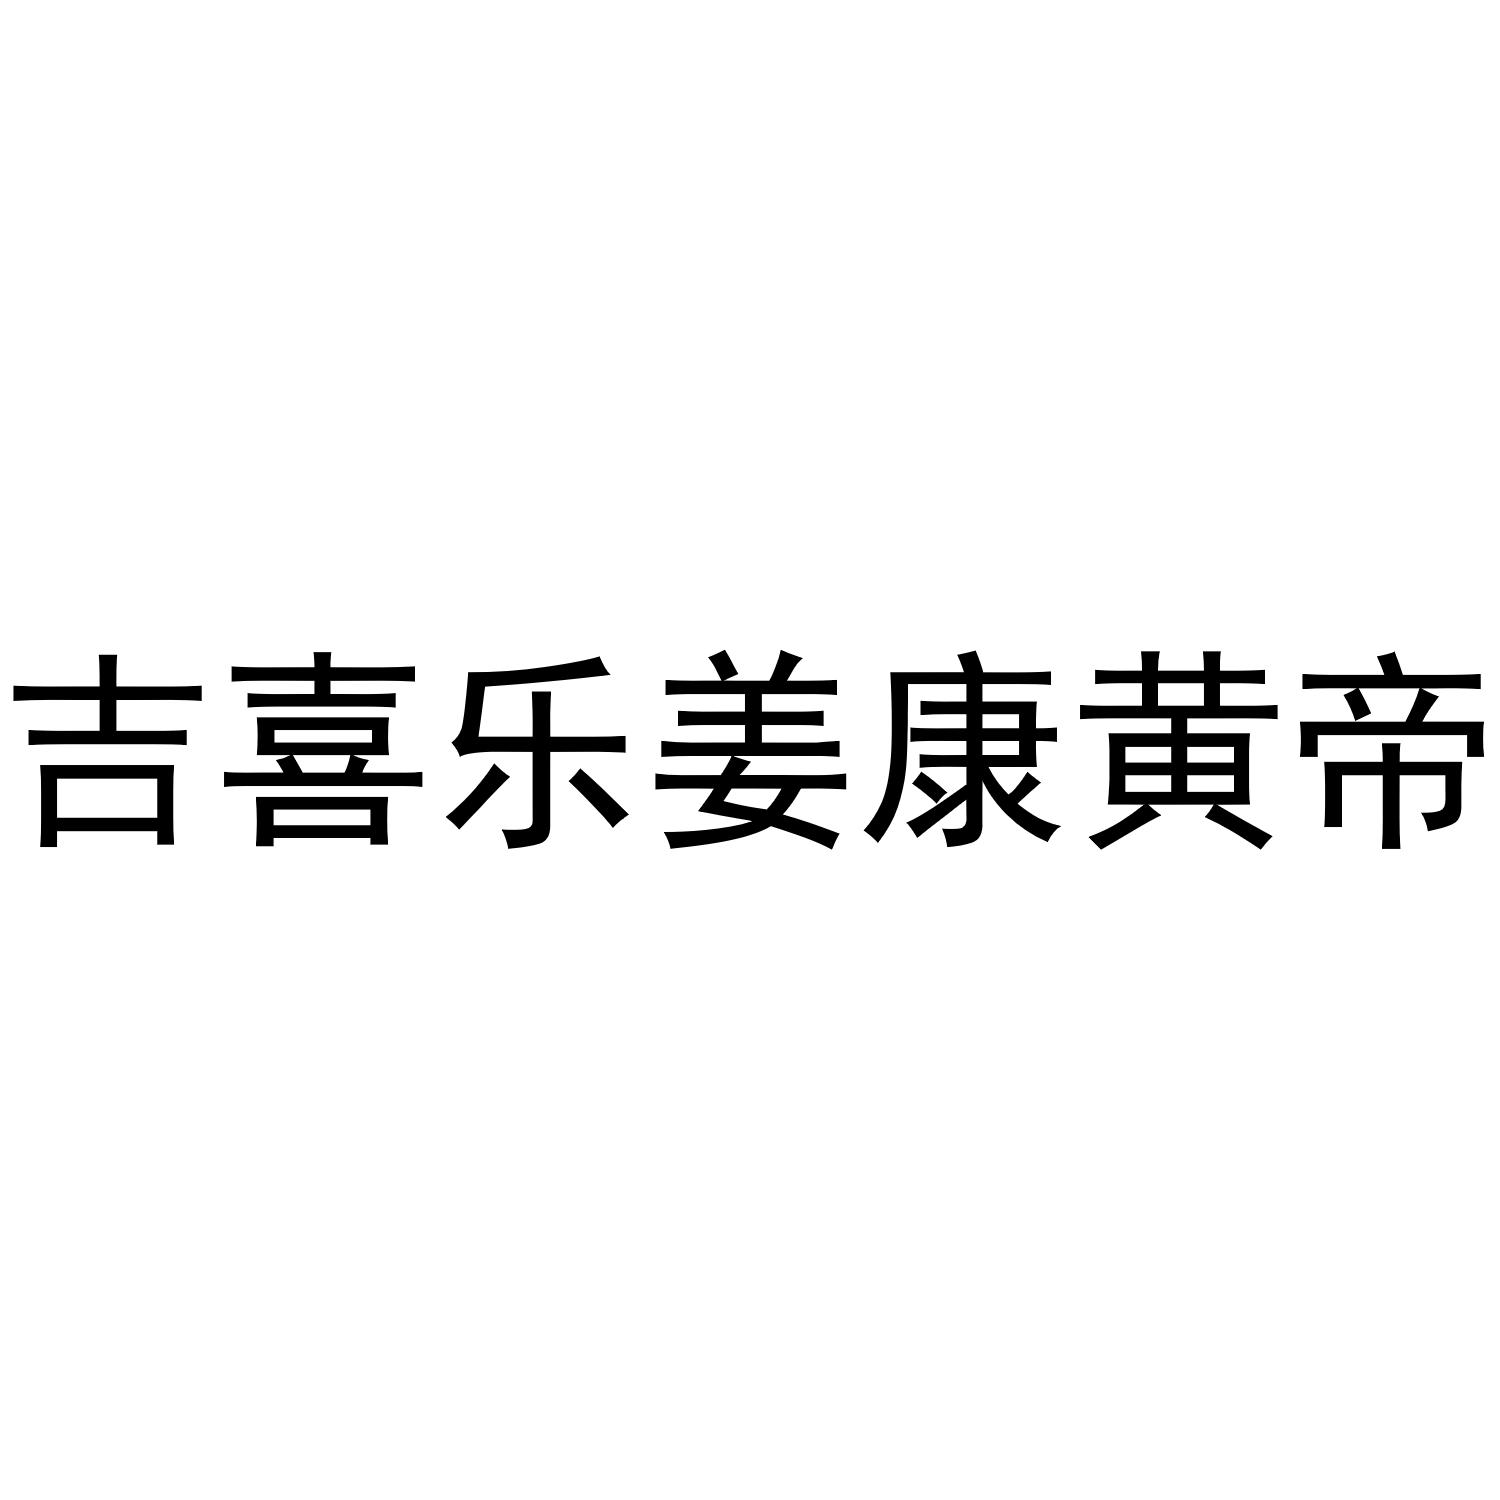 商标文字吉喜乐姜康黄帝商标注册号 44552489,商标申请人江苏圣果葡萄